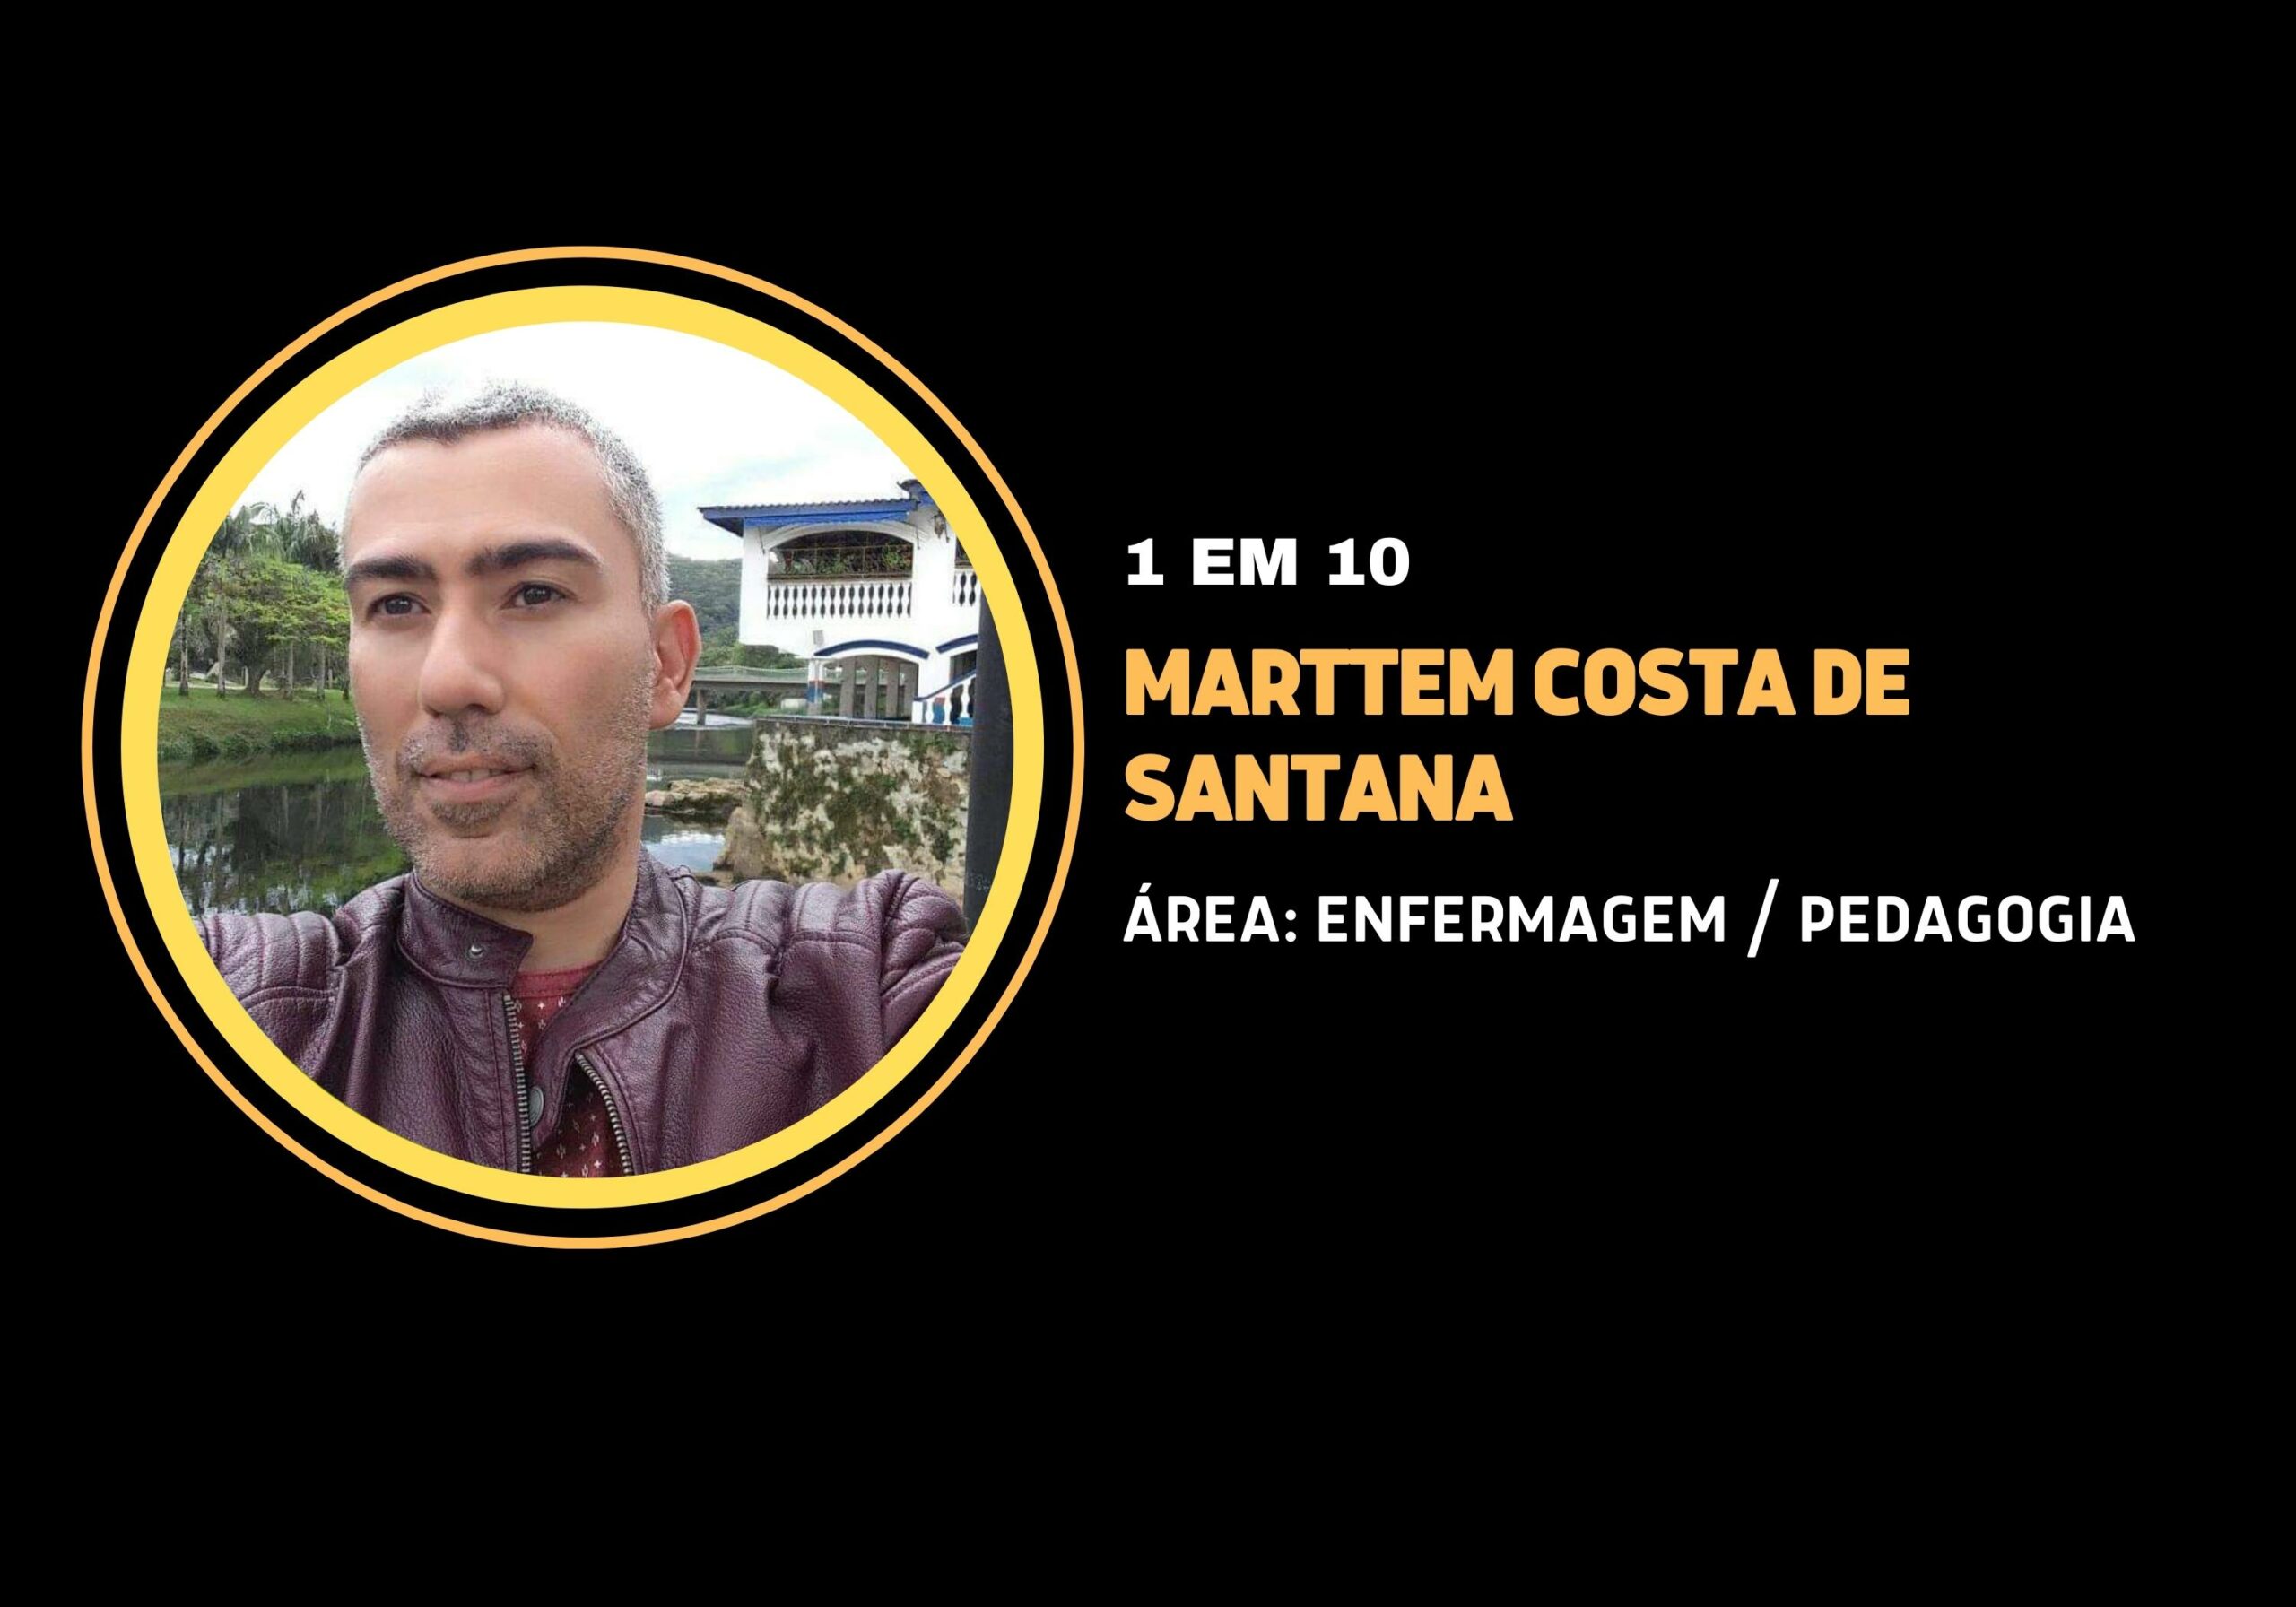 Marttem Costa de Santana | 1 em 10